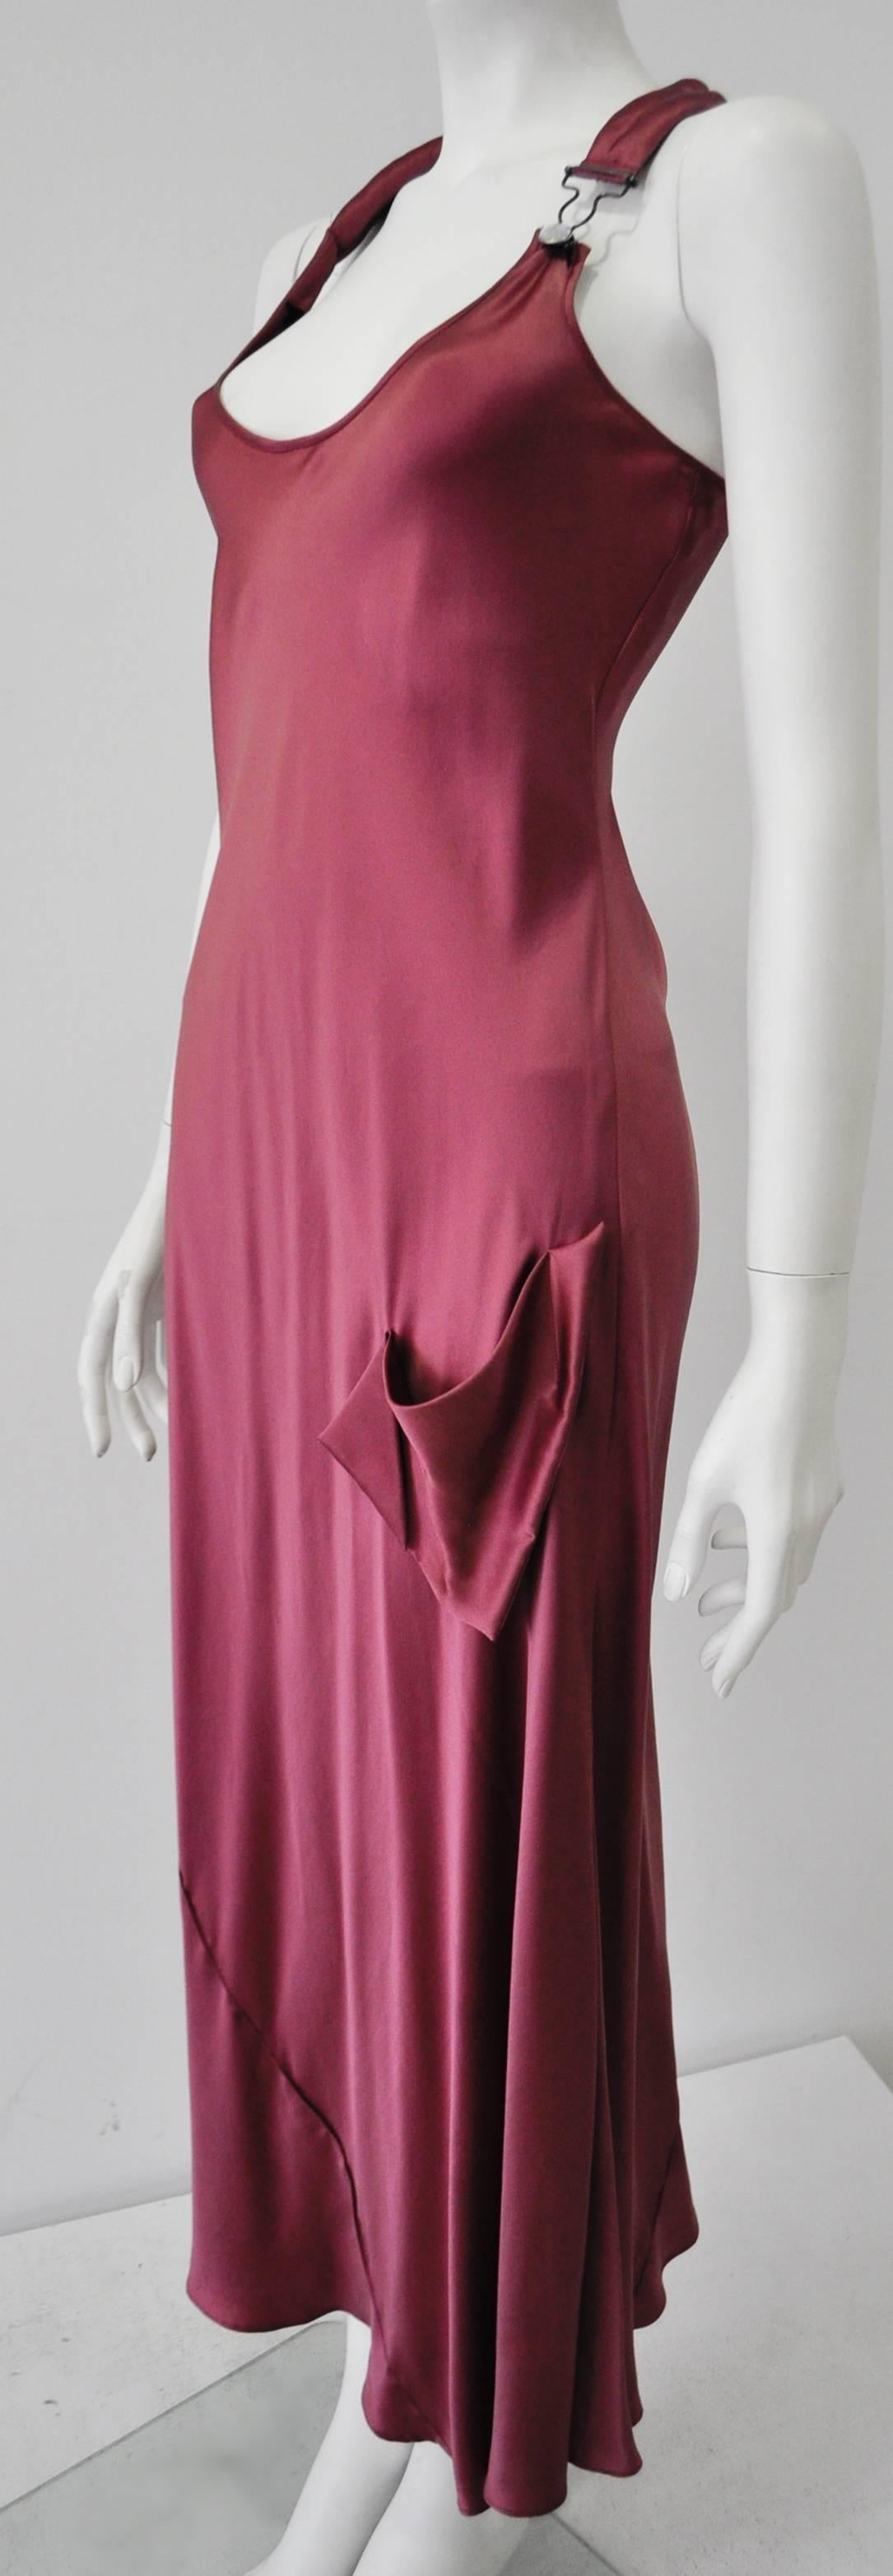 raspberry silk dress